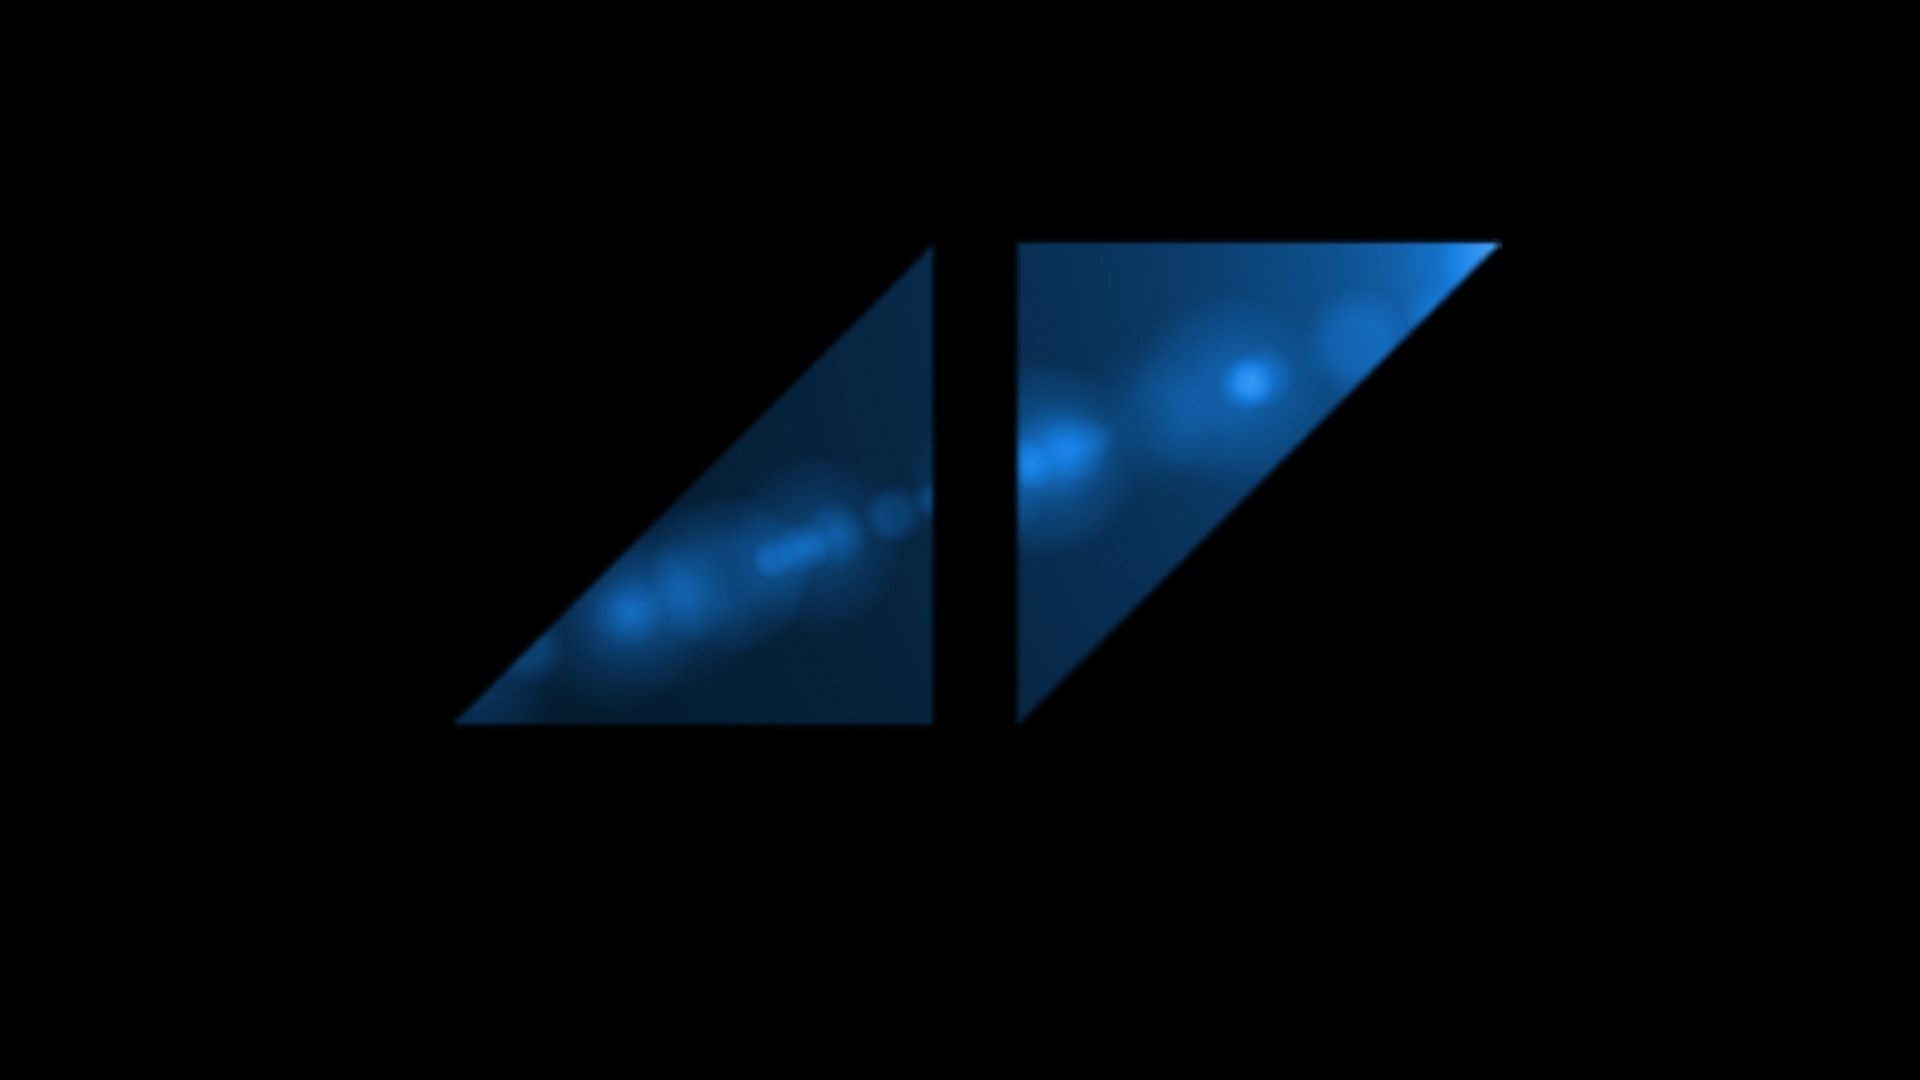 Avicii Symbol Logo Wallpaper HD. Avicii, Avicii symbol, Avicii logo